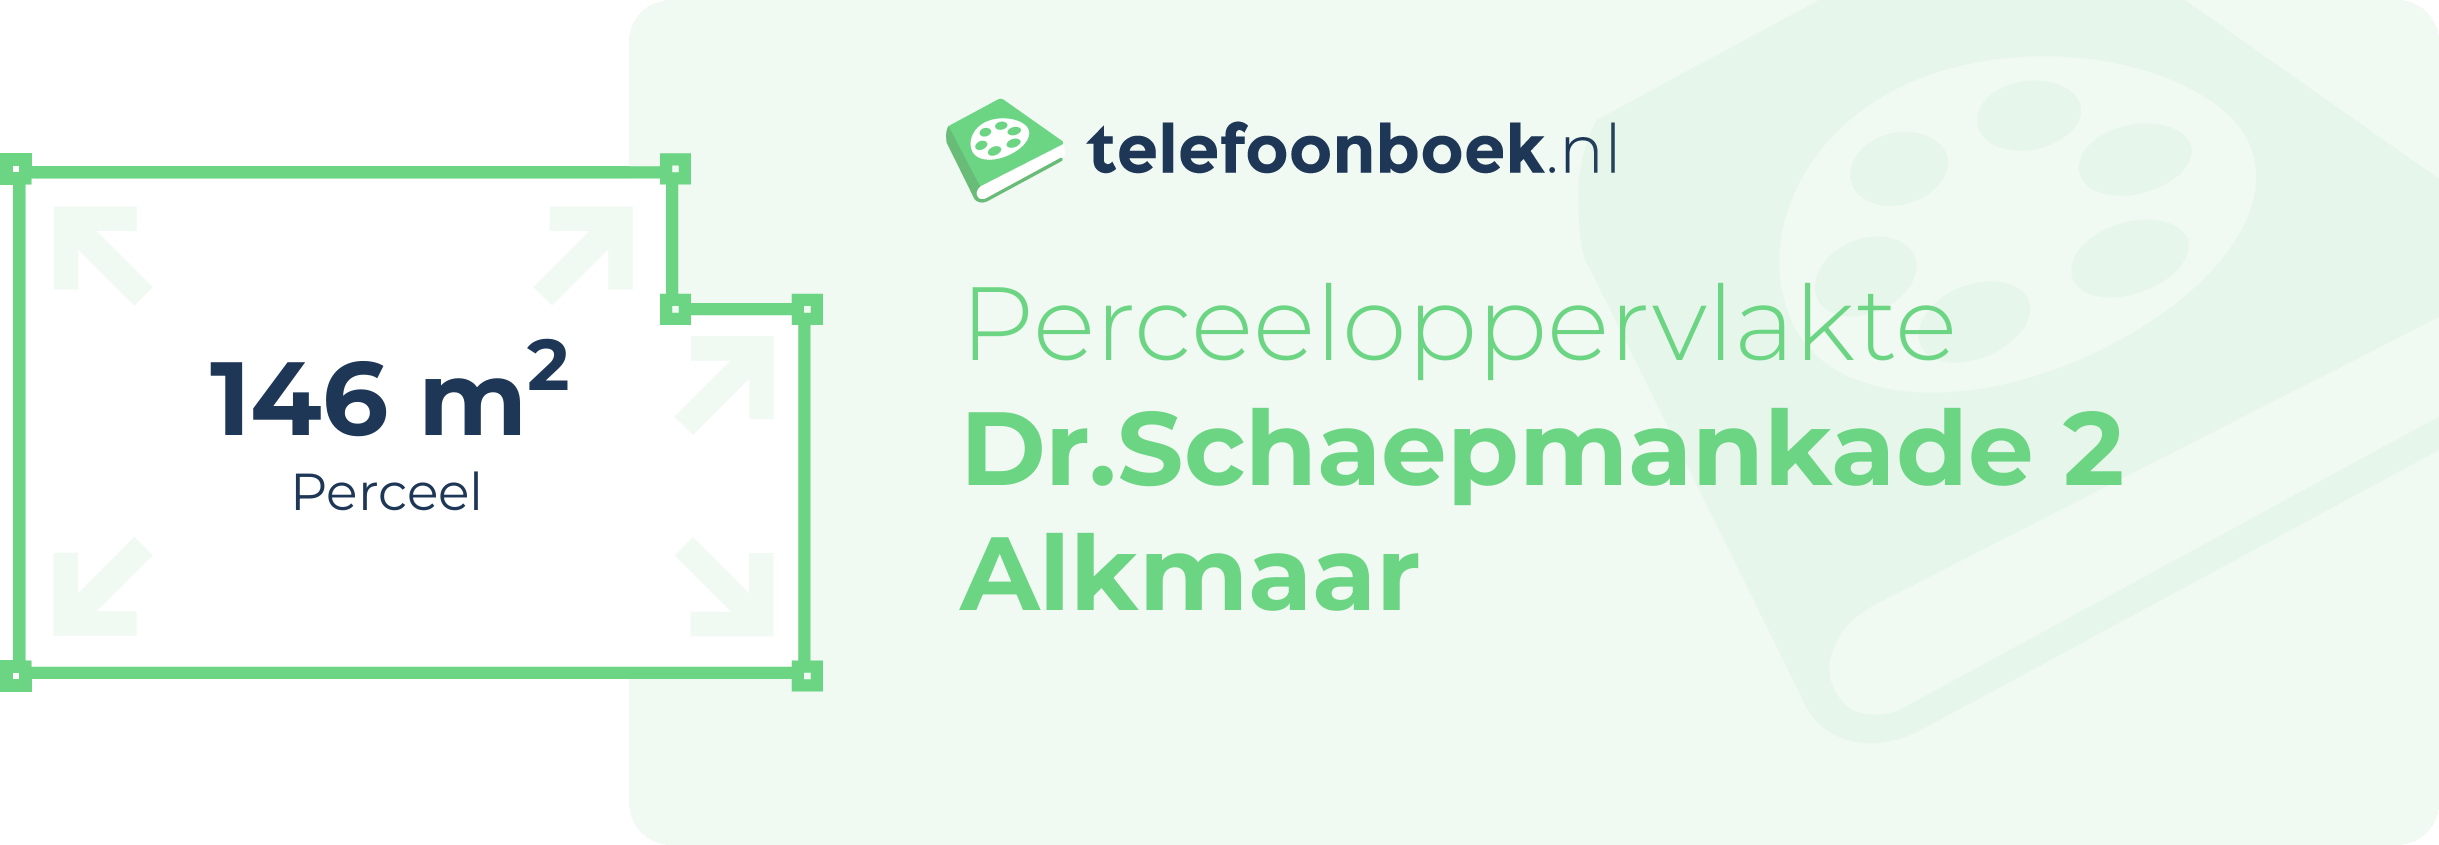 Perceeloppervlakte Dr.Schaepmankade 2 Alkmaar